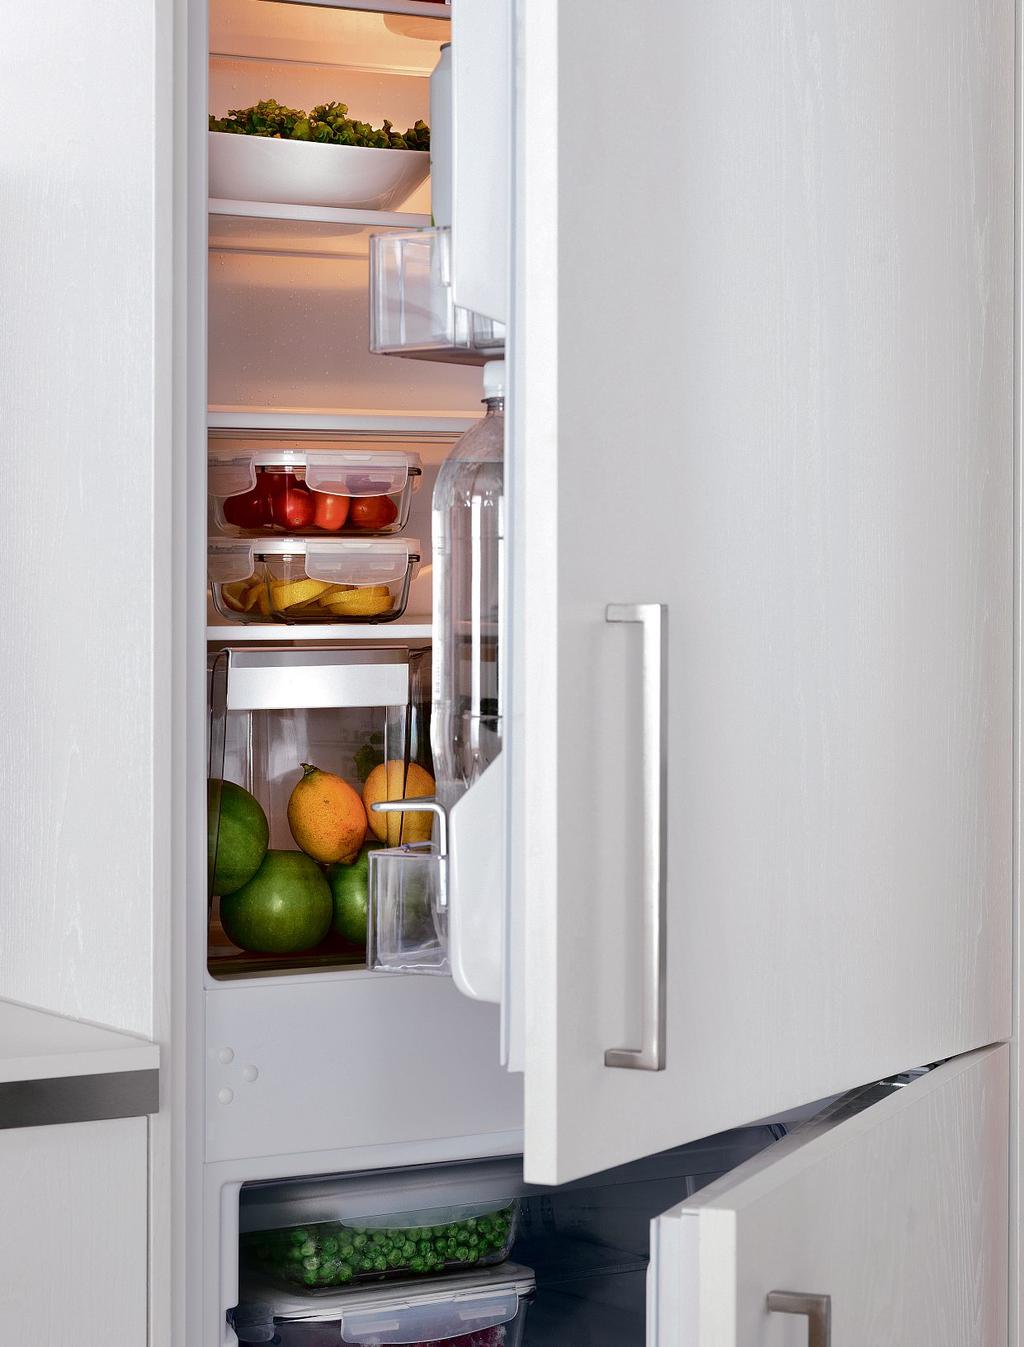 FRIGORIFERI E CONGELATORI I frigoriferi e congelatori IKEA hanno moltissime funzioni intelligenti e sono dotati di pratici accessori che ti permettono di conservare la freschezza degli alimenti più a